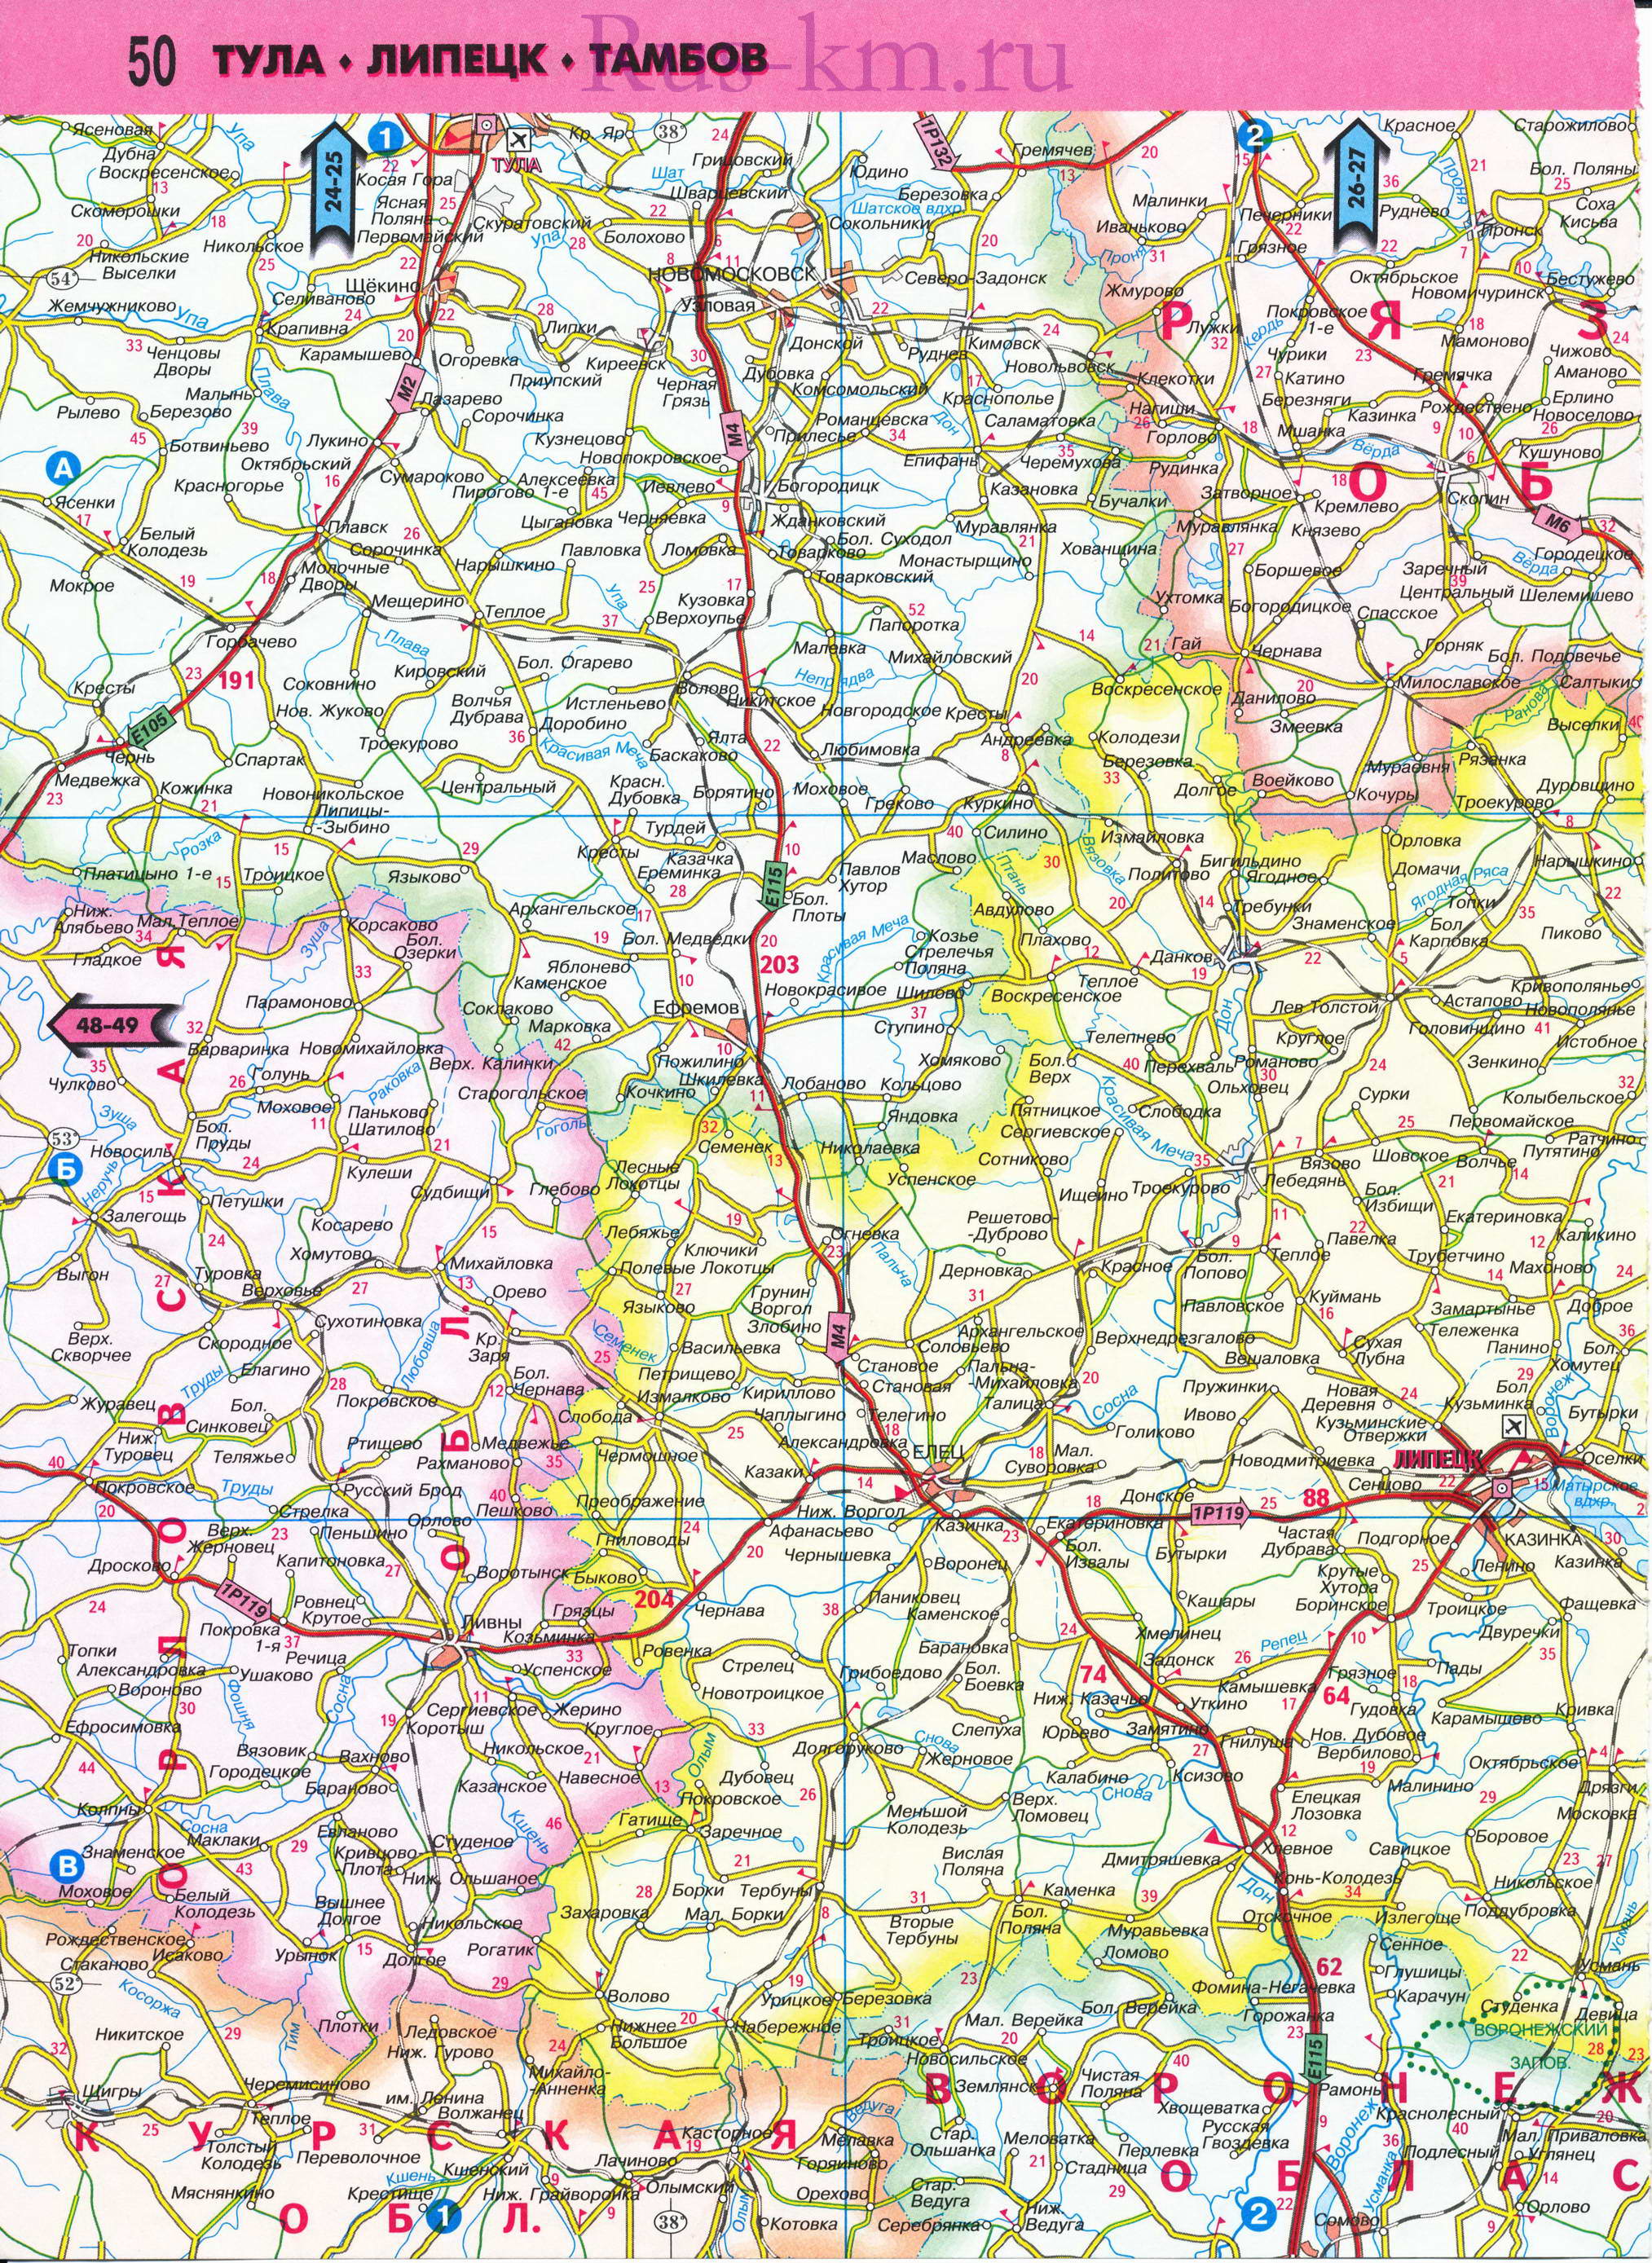 Карта Орловской области автодорожная. Новая карта 2011 года - Орловская область в масштабе 1см:10км, B0 - 